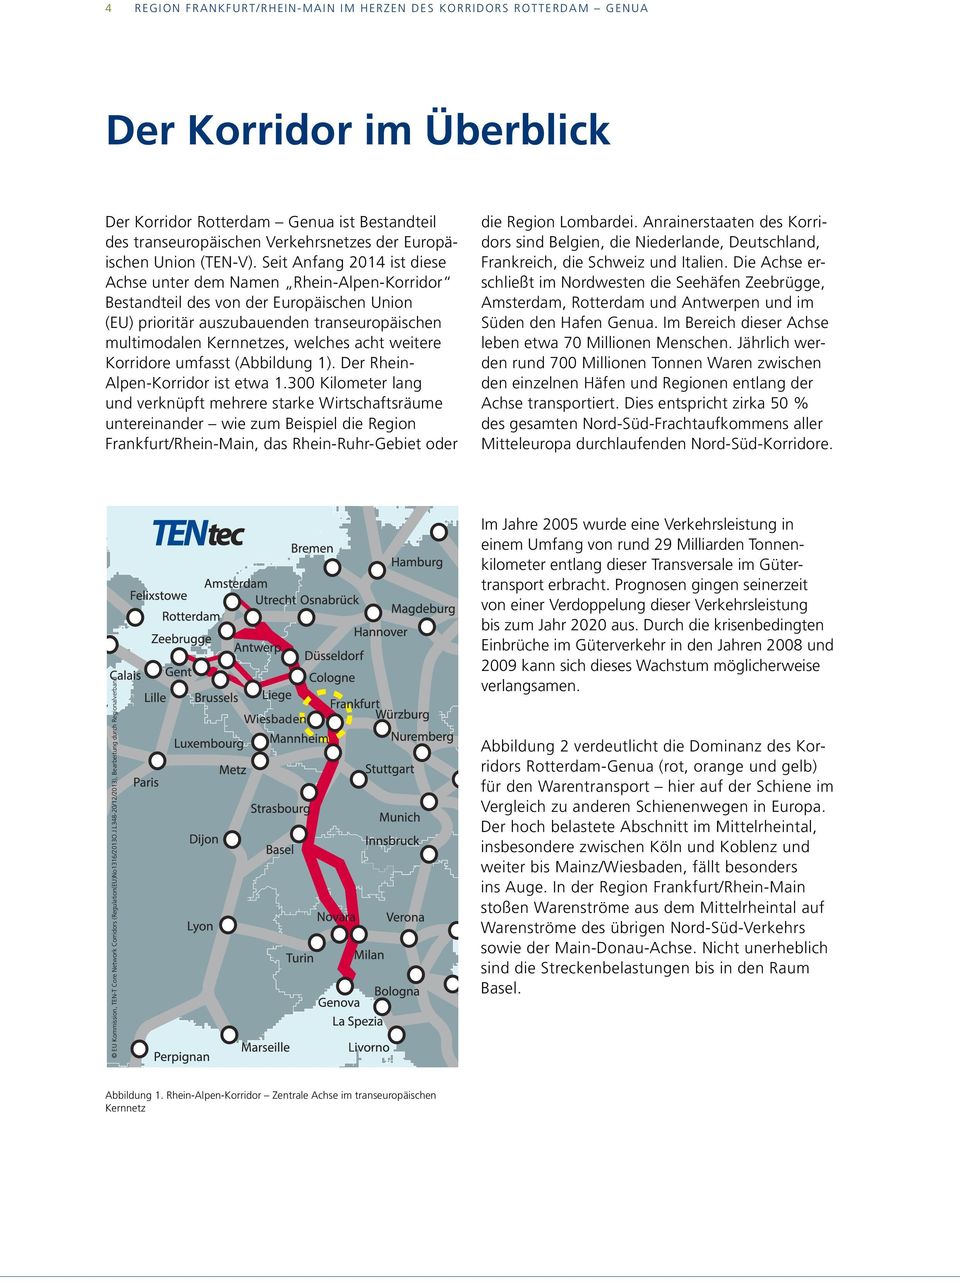 Seit Anfang 2014 ist diese Achse unter dem Namen Rhein-Alpen-Korridor Bestandteil des von der Europäischen Union (EU) prioritär auszubauenden transeuropäischen multimodalen Kernnetzes, welches acht